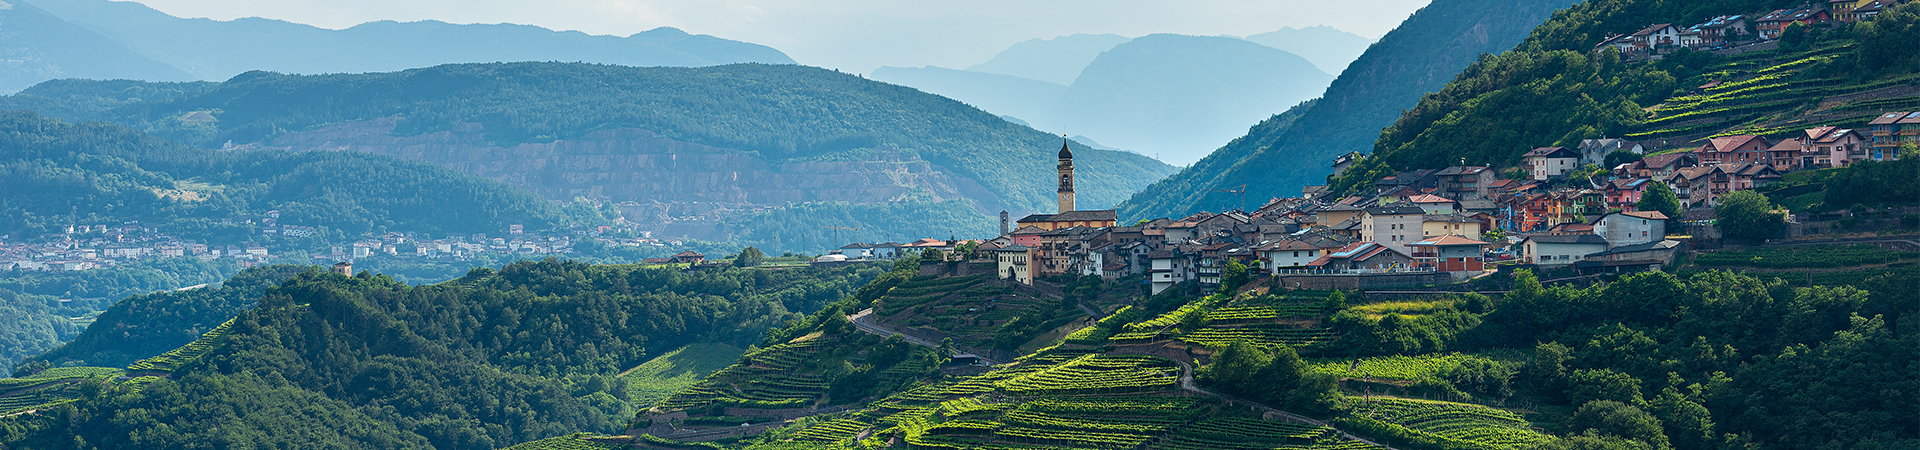 טרנטינו-אלטו אדיג'ה -  Trentino-Alto Adige